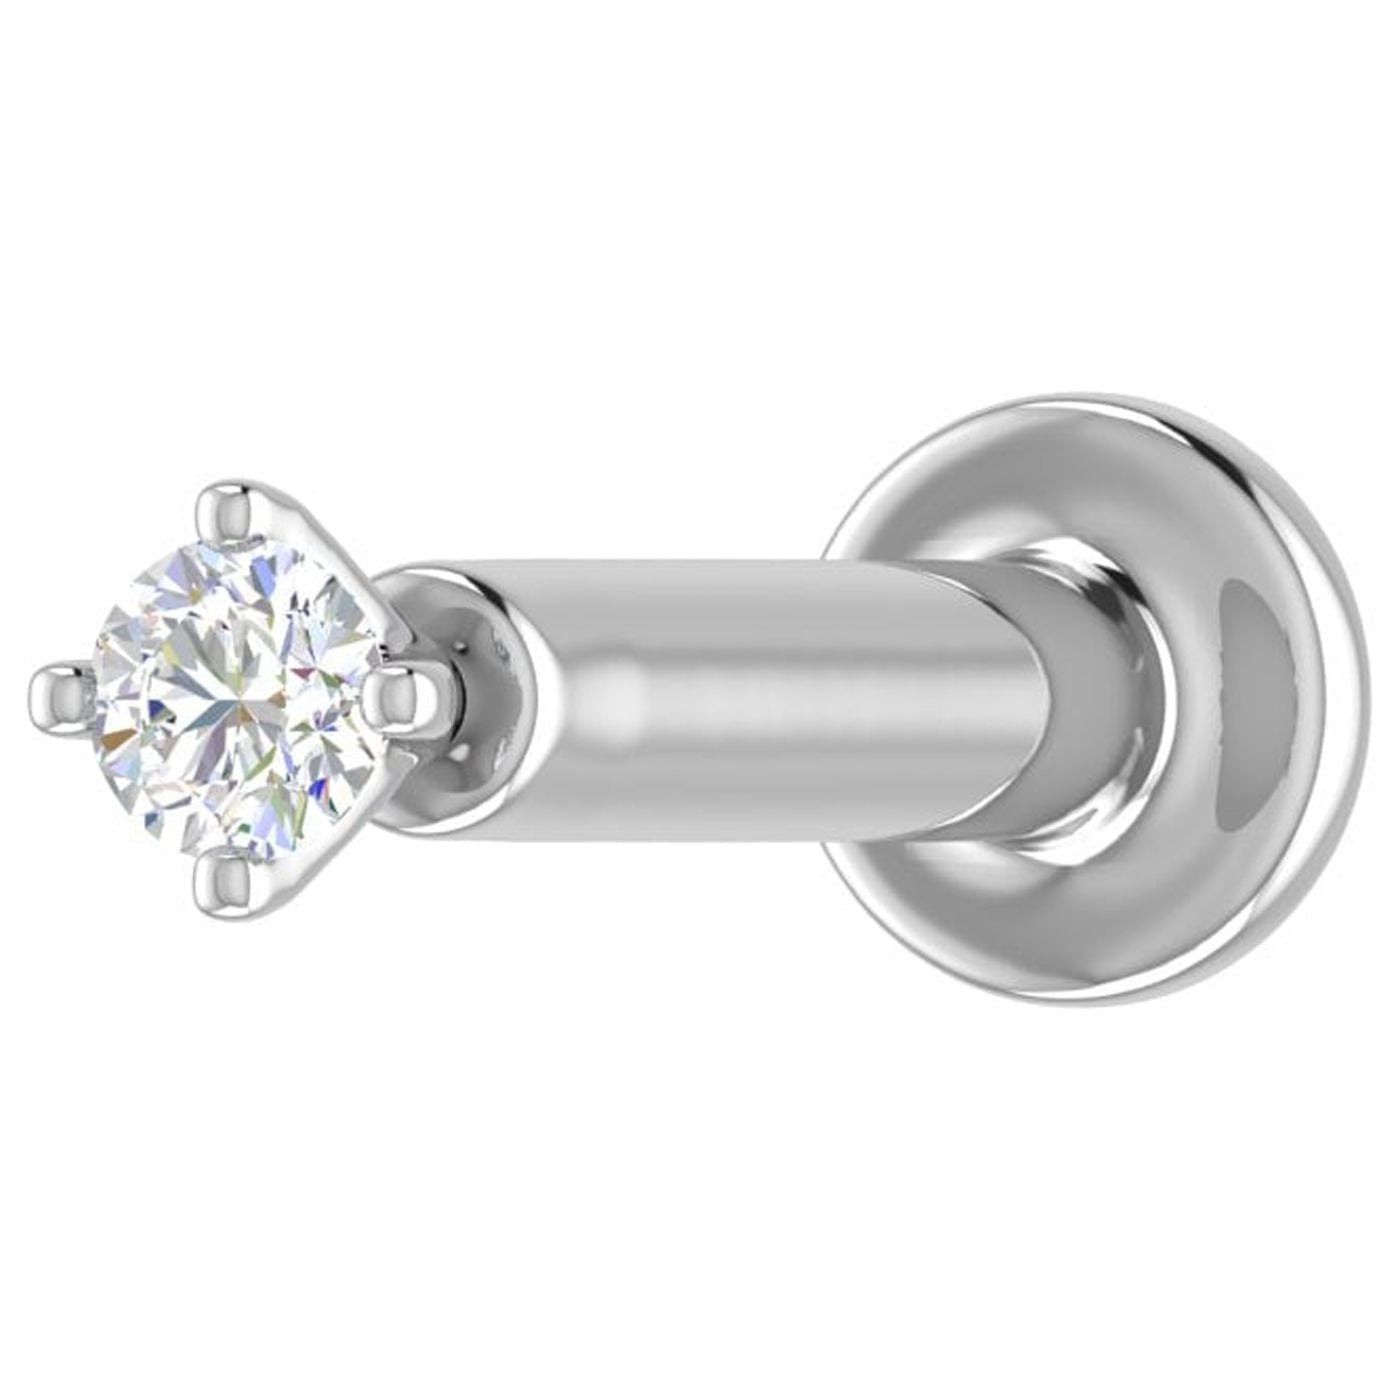 Diamond Nose Ring, Genuine Diamond Nose Hoop, Single Stone Nose Ring, Nose  Ring With Diamonds, 14K Gold Diamond Nose Jewelry Piercing - Etsy Finland